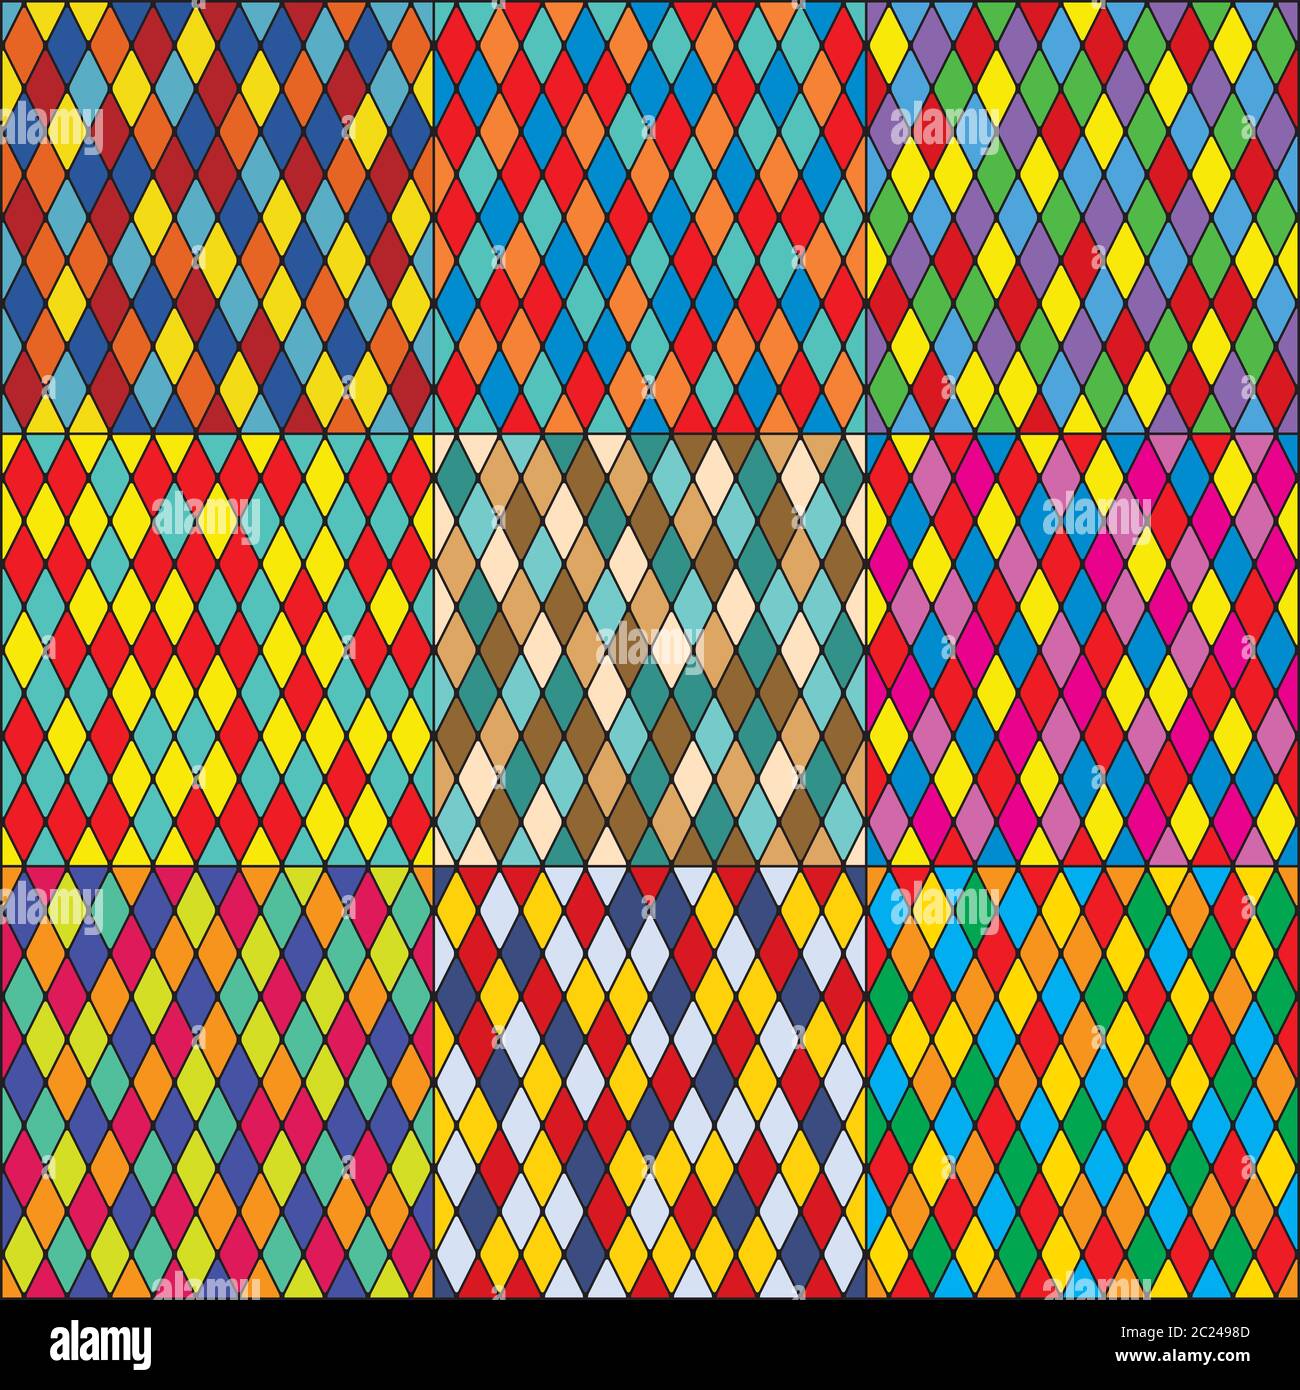 Arlecchino il mosaico policromo patchwork multicolore modelli senza giunture, set di 9 piastrelle colorate. Foto Stock